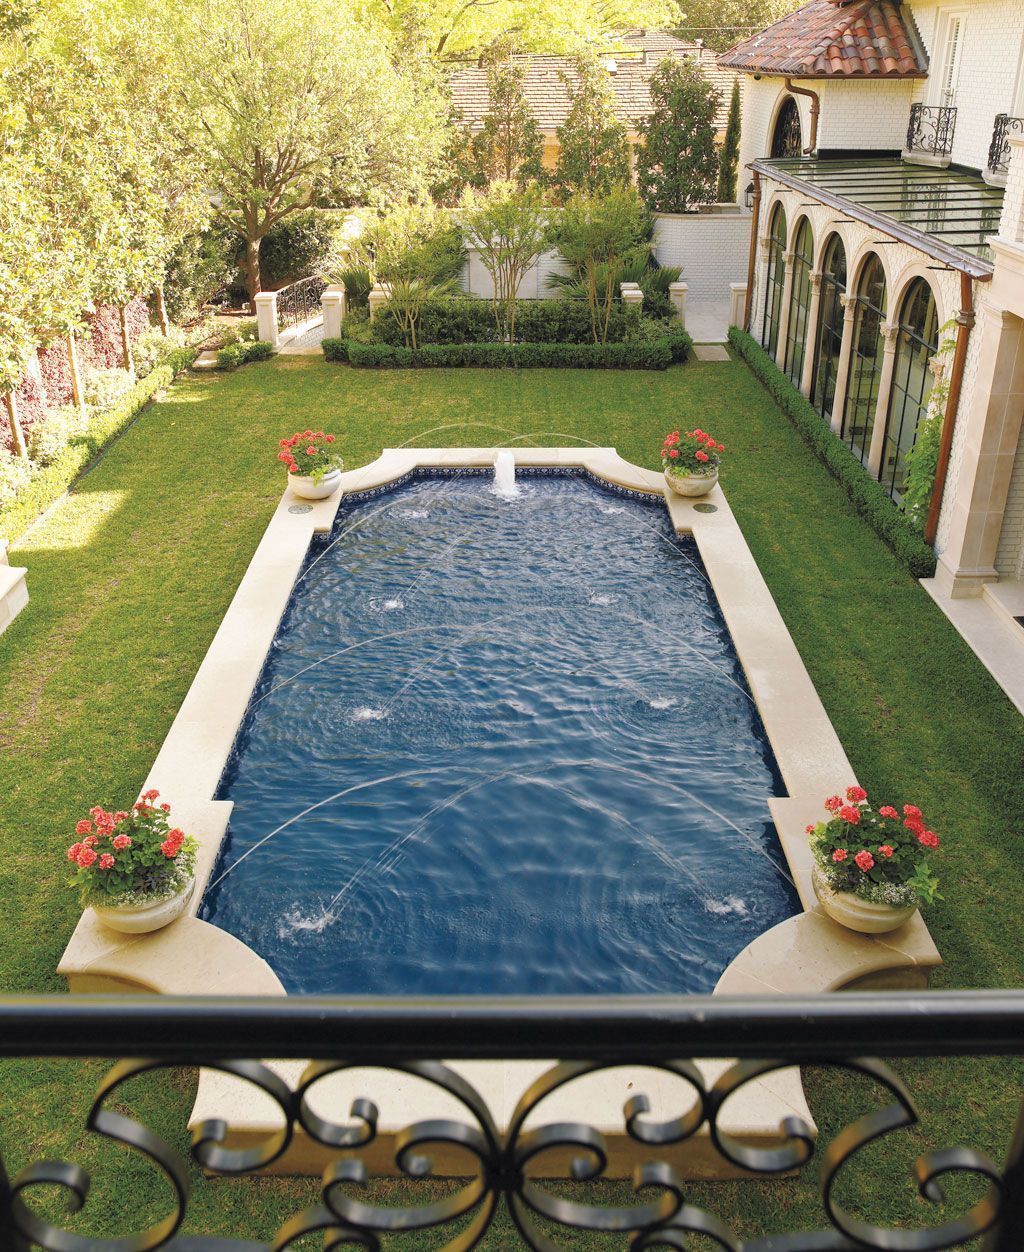 Gartengestaltung Mit Pool Ideen Bilder Neu 46 Amazing European Gardening Ideas with Swimming Pool